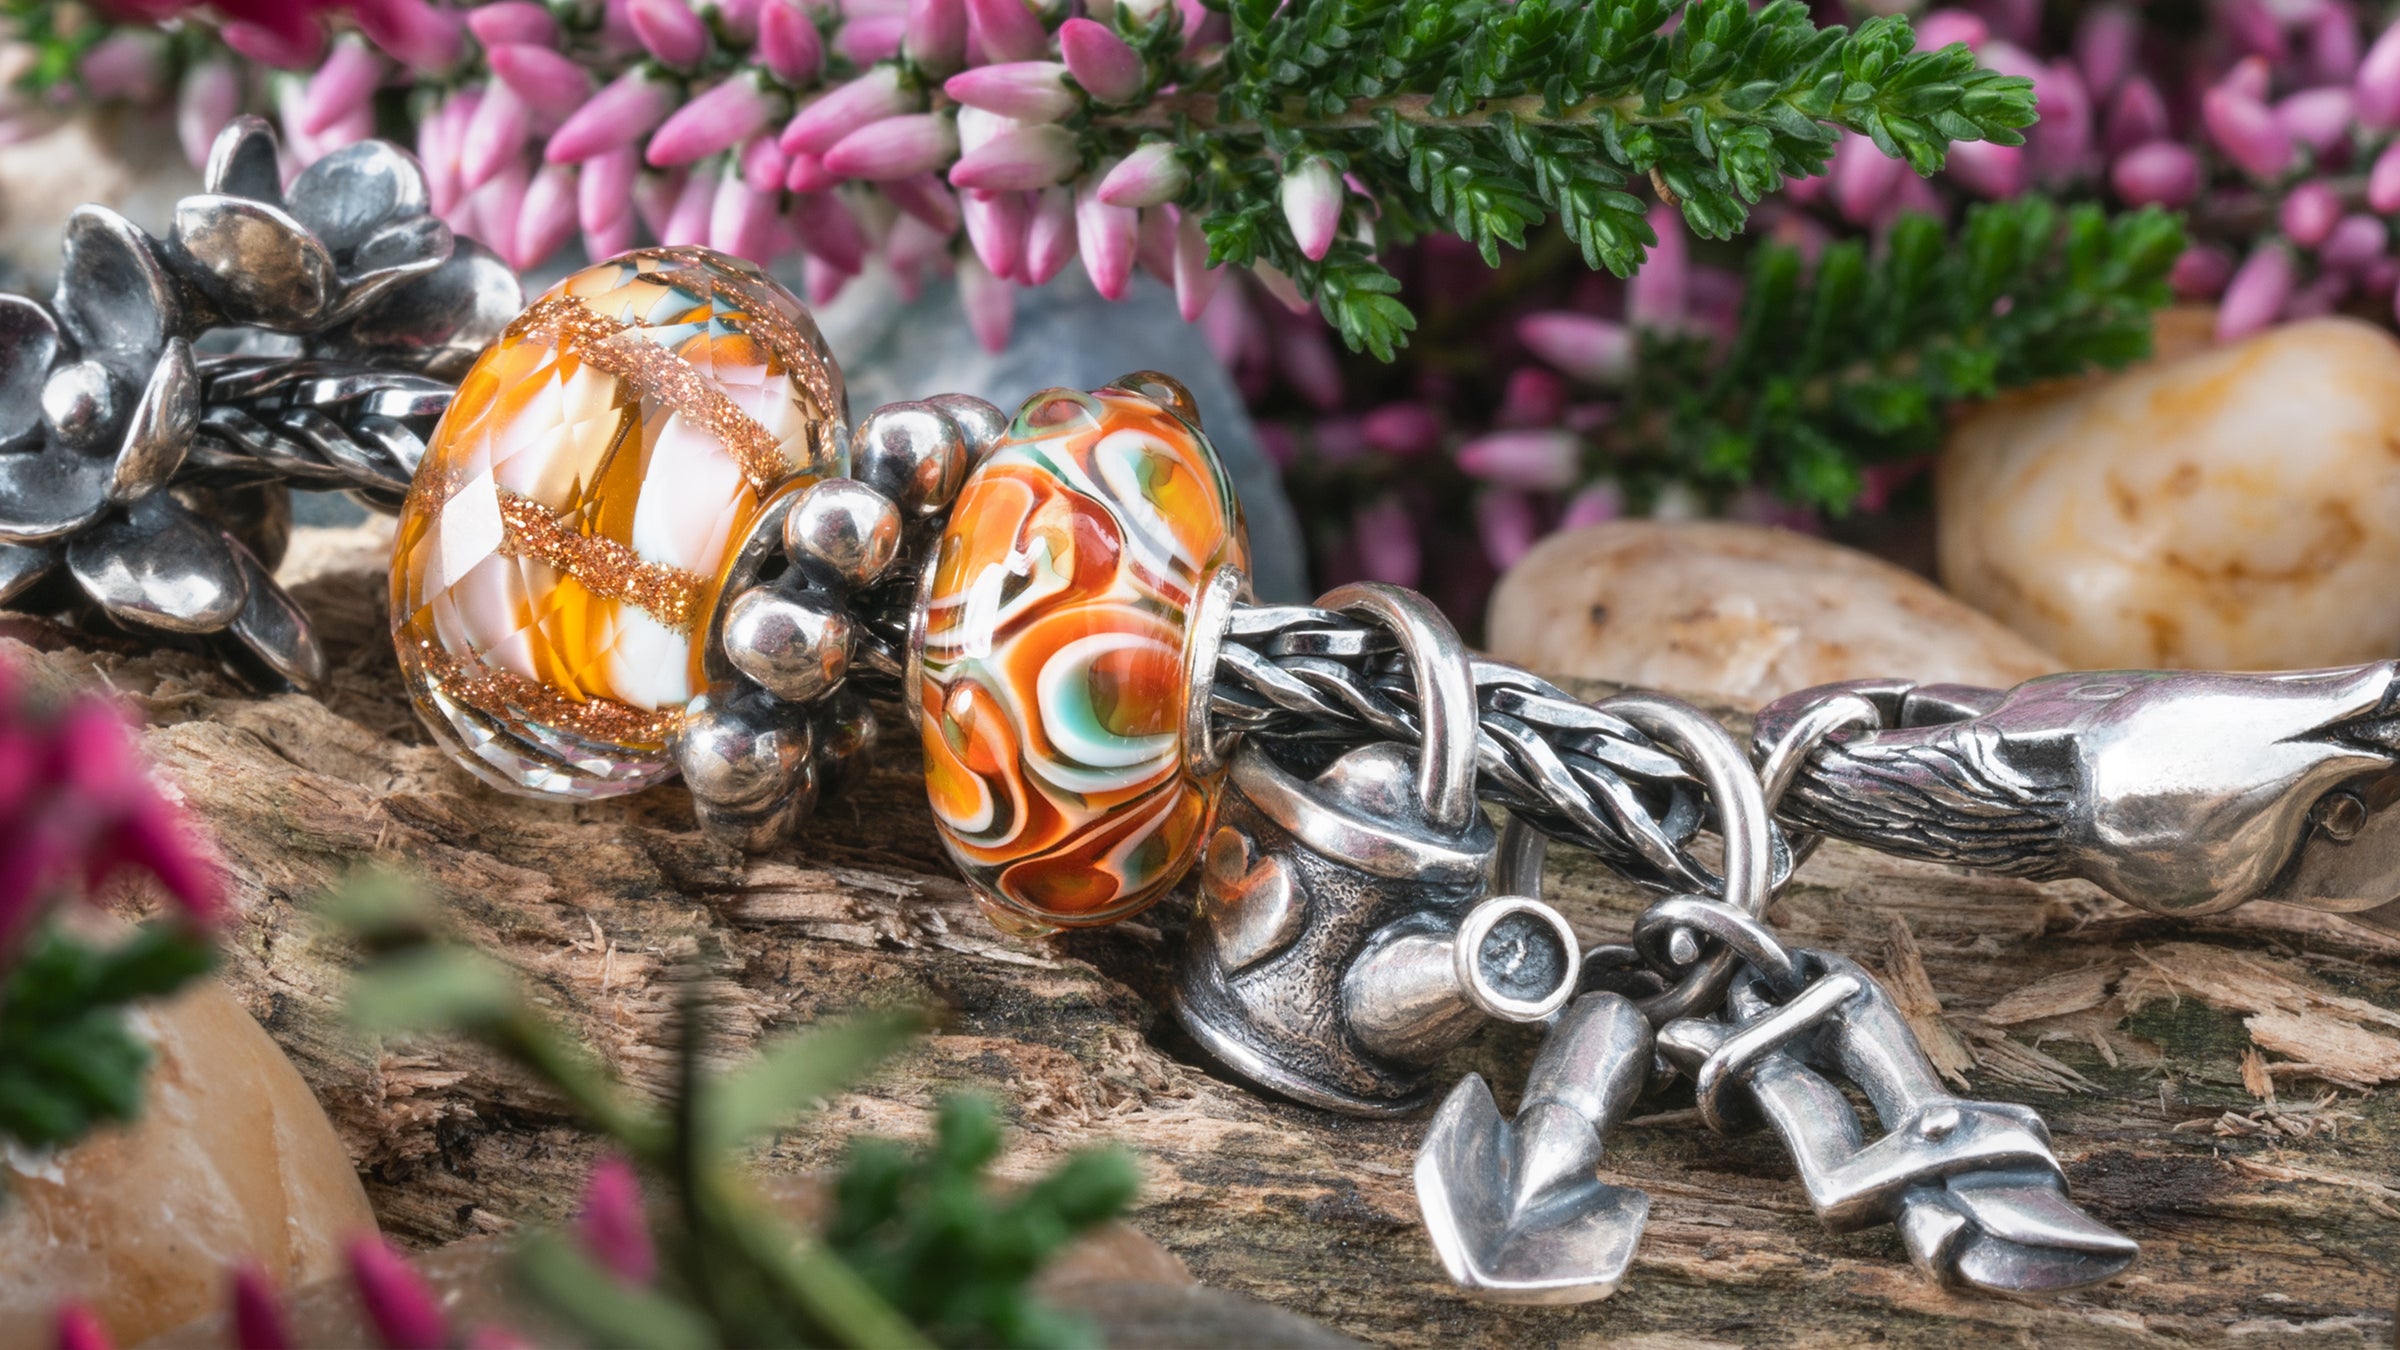 Armband mit Beads der Frühlingskollektion Blühendes Leben, auf einem Baumstamm liegend. Im Hintergrund Blumen